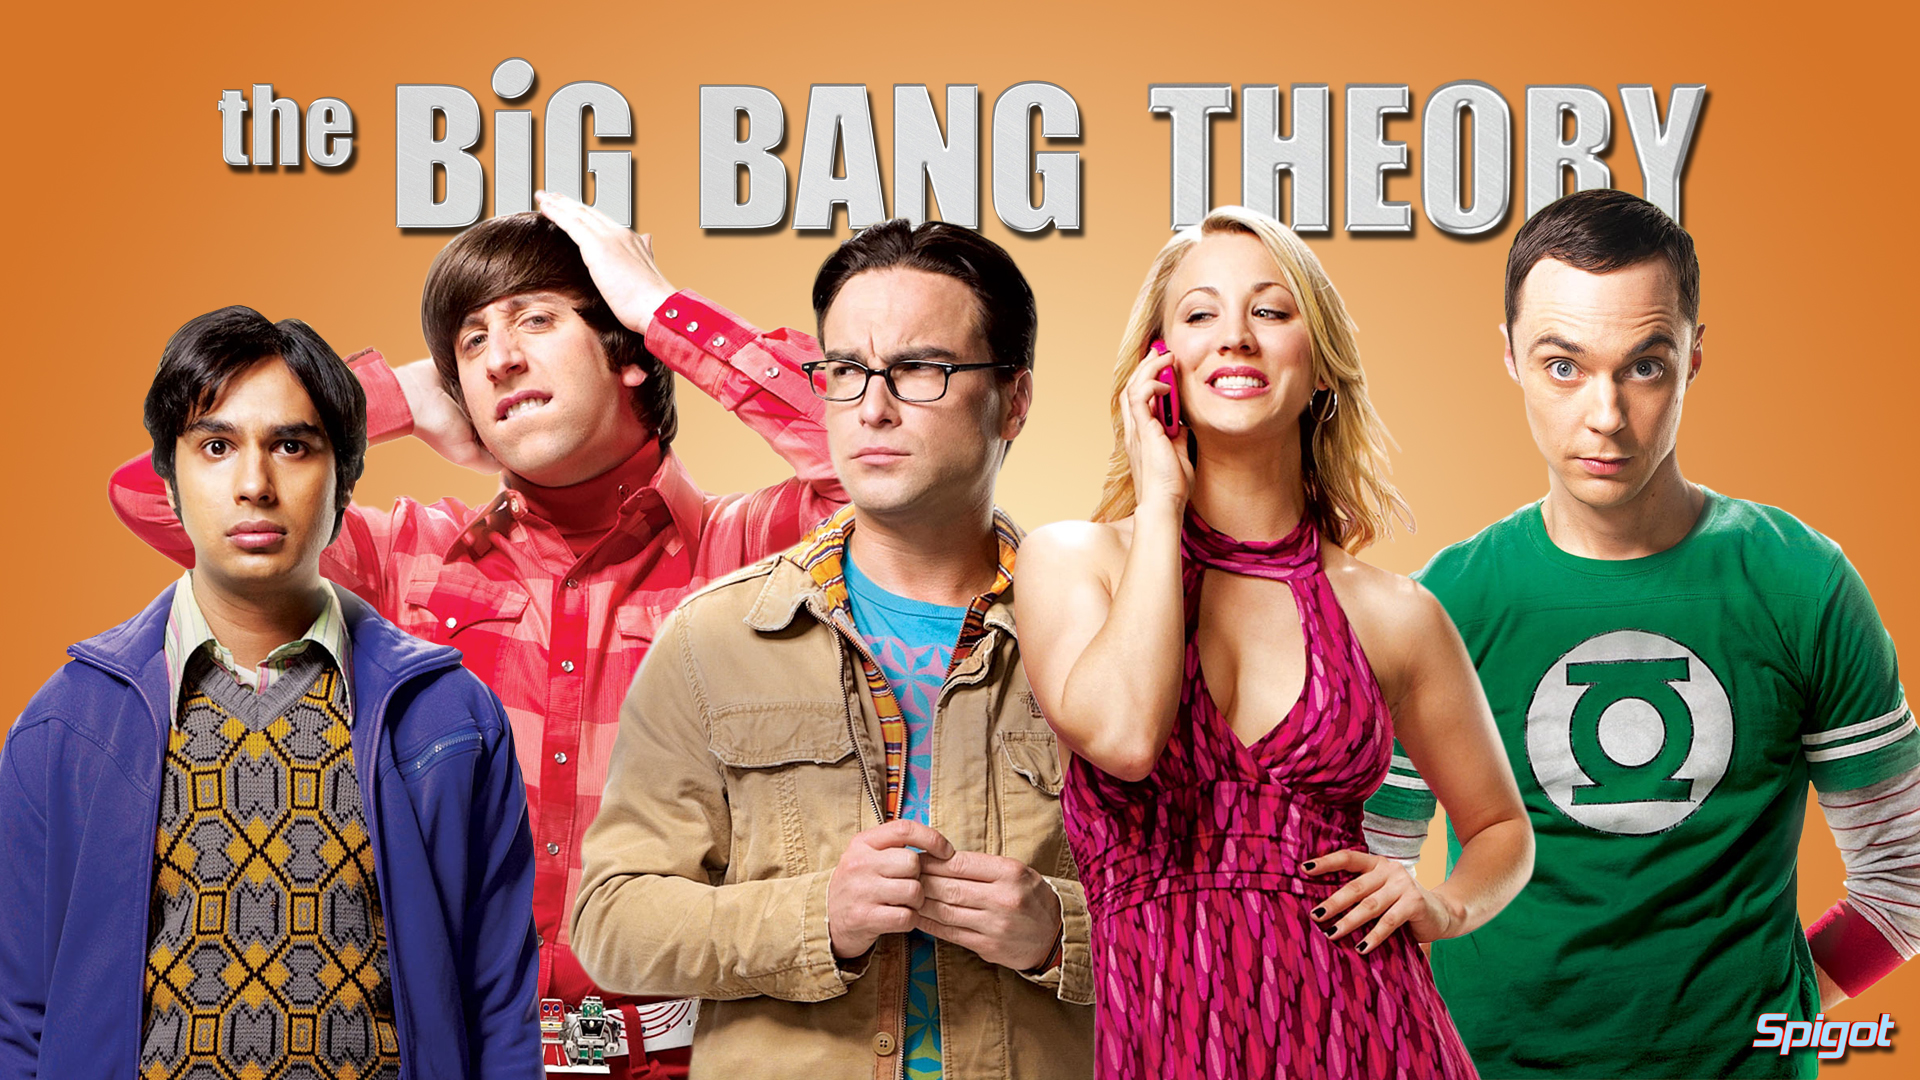 Big Bang Theory Wallpaper For Android